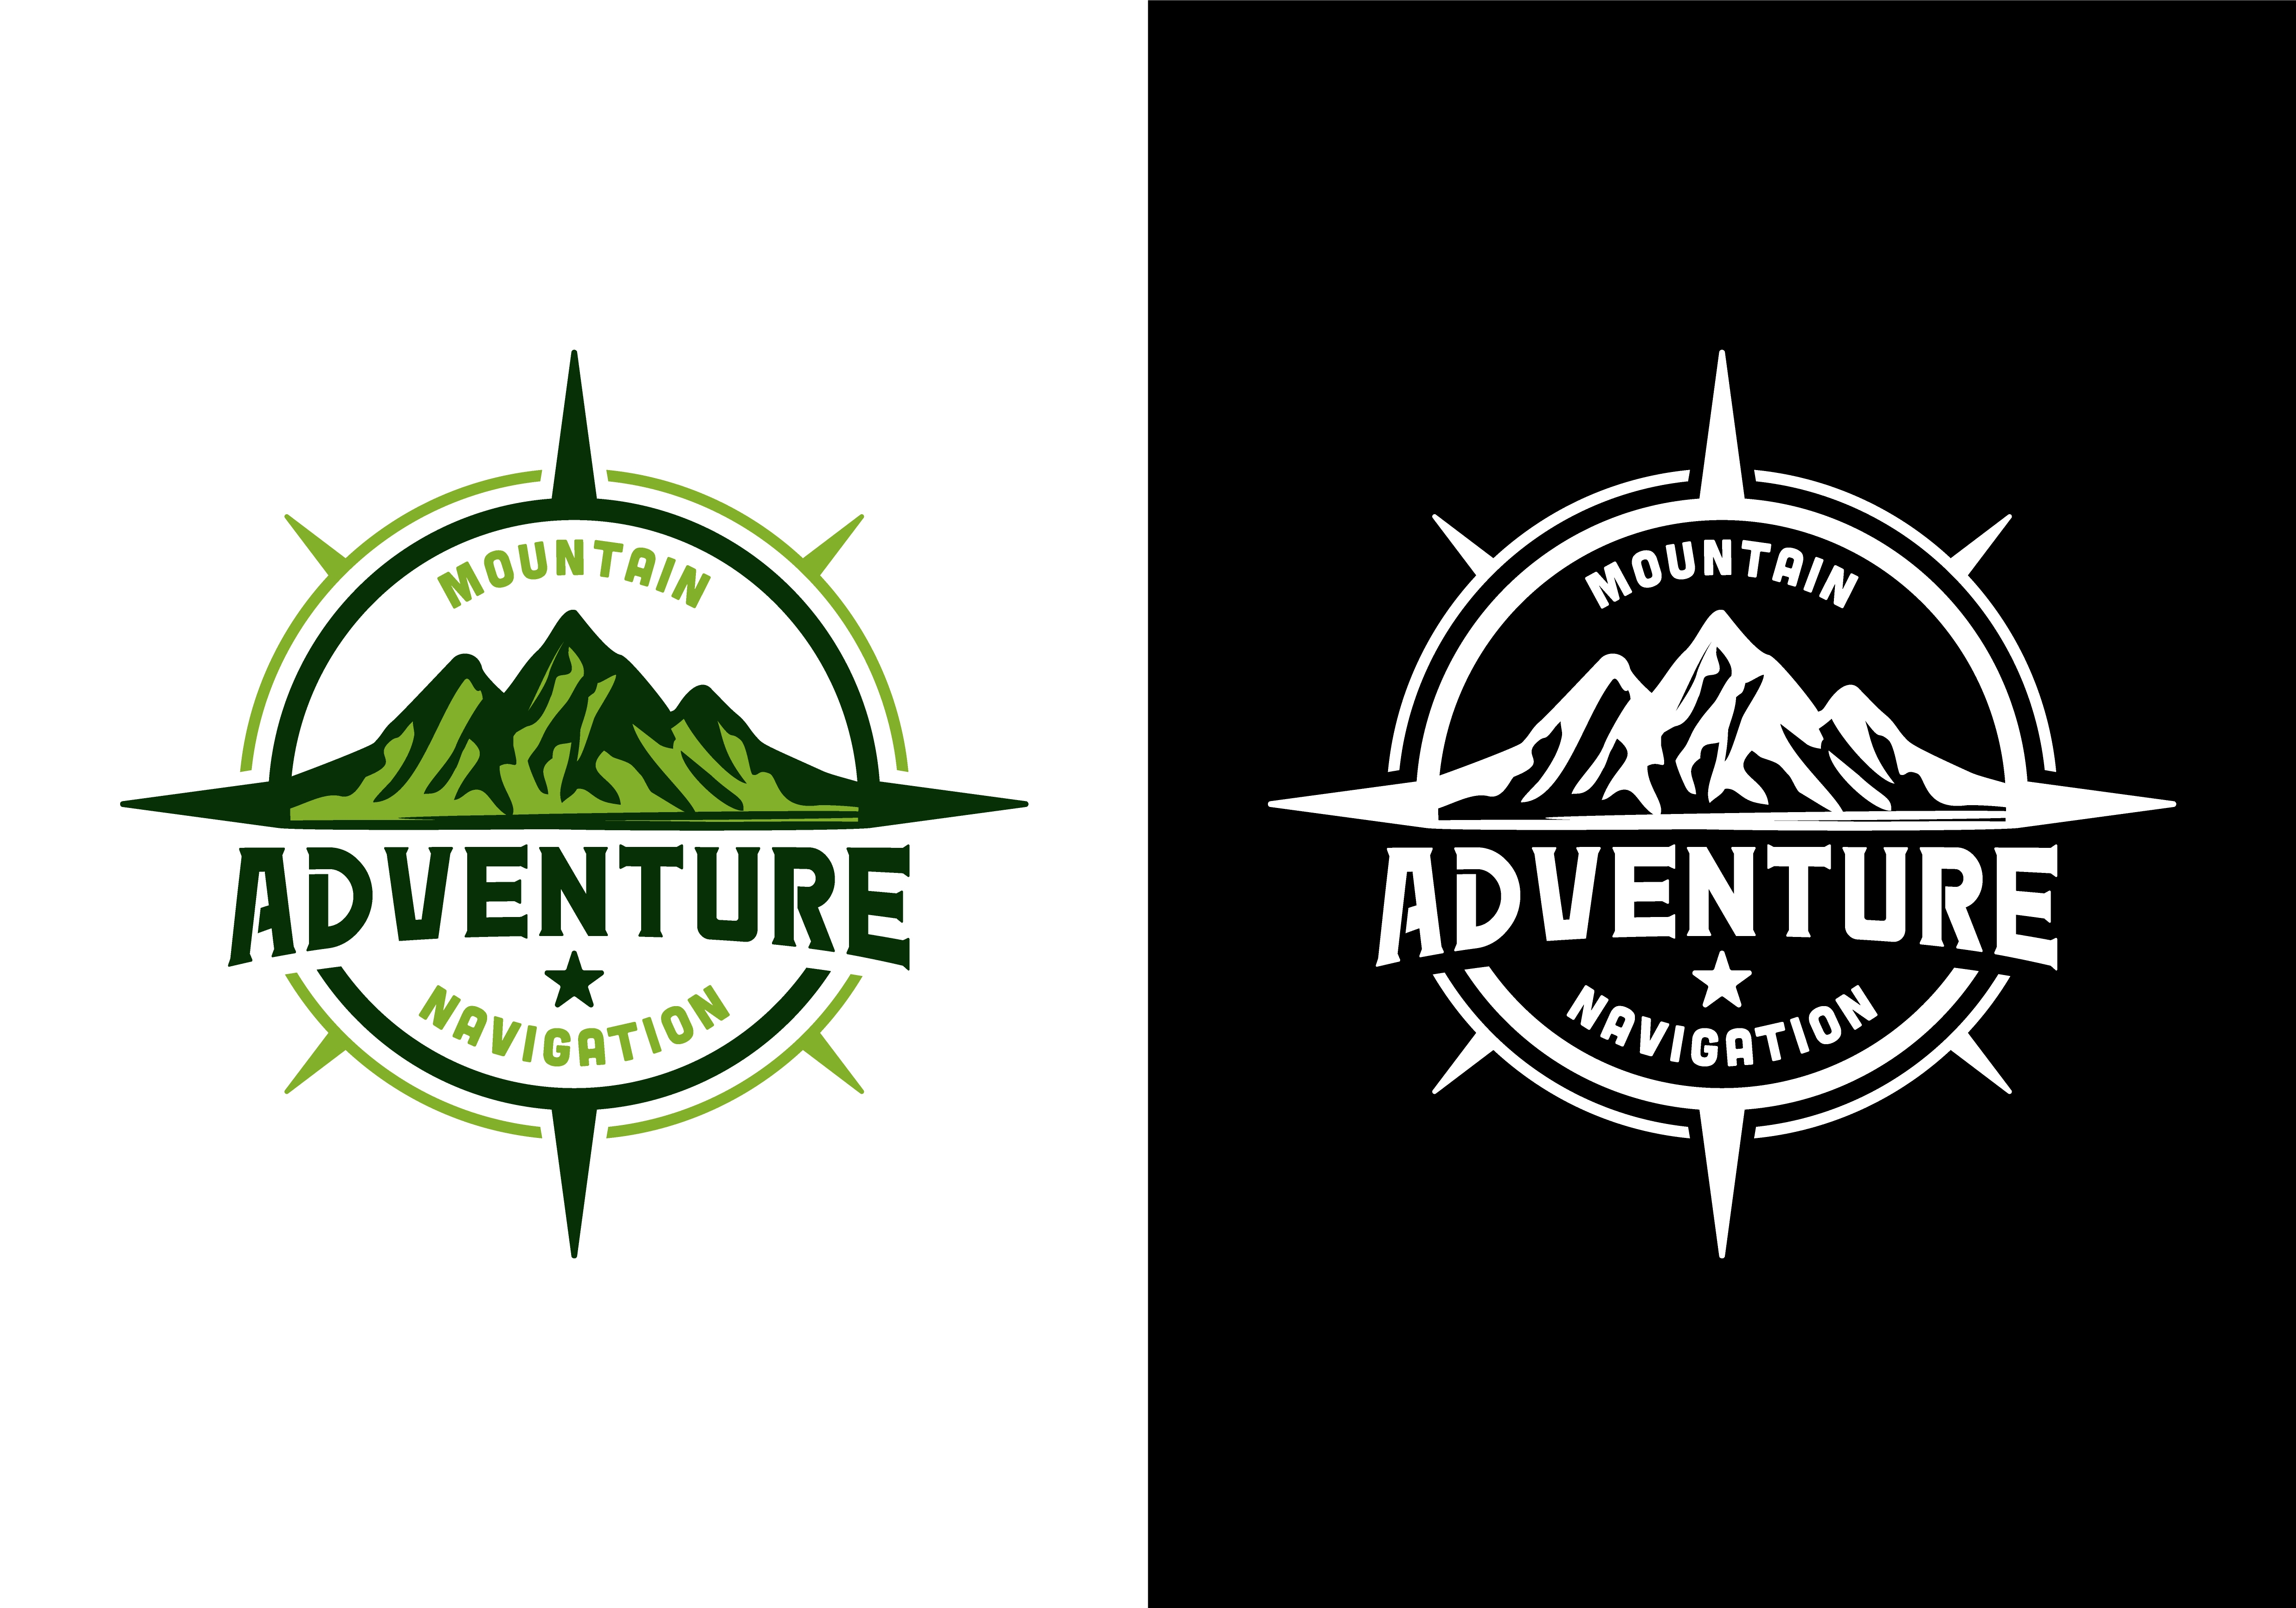 Mountain Compass Adventure logo